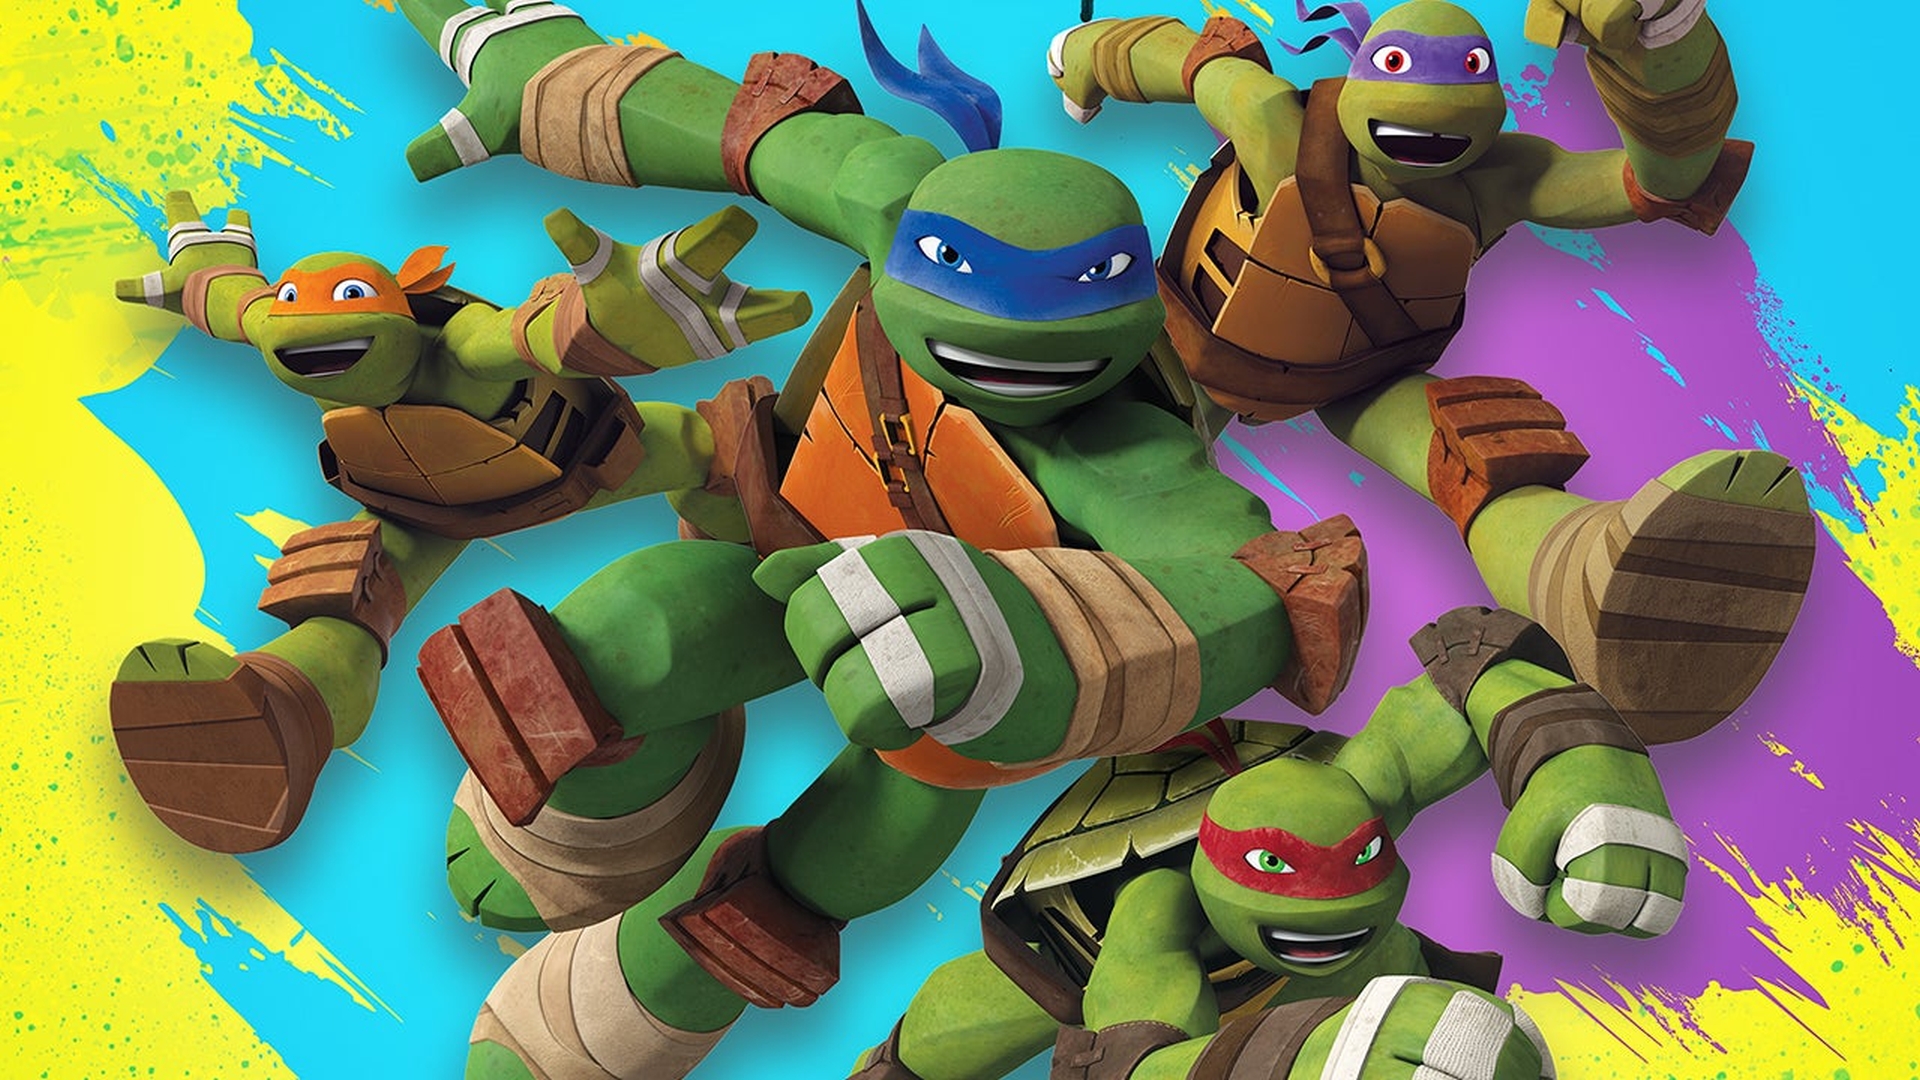 El lanzamiento de Teenage Mutant Ninja Turtles Arcade: Wrath of the Mutants Coming saldrá a la venta el 23 de abril